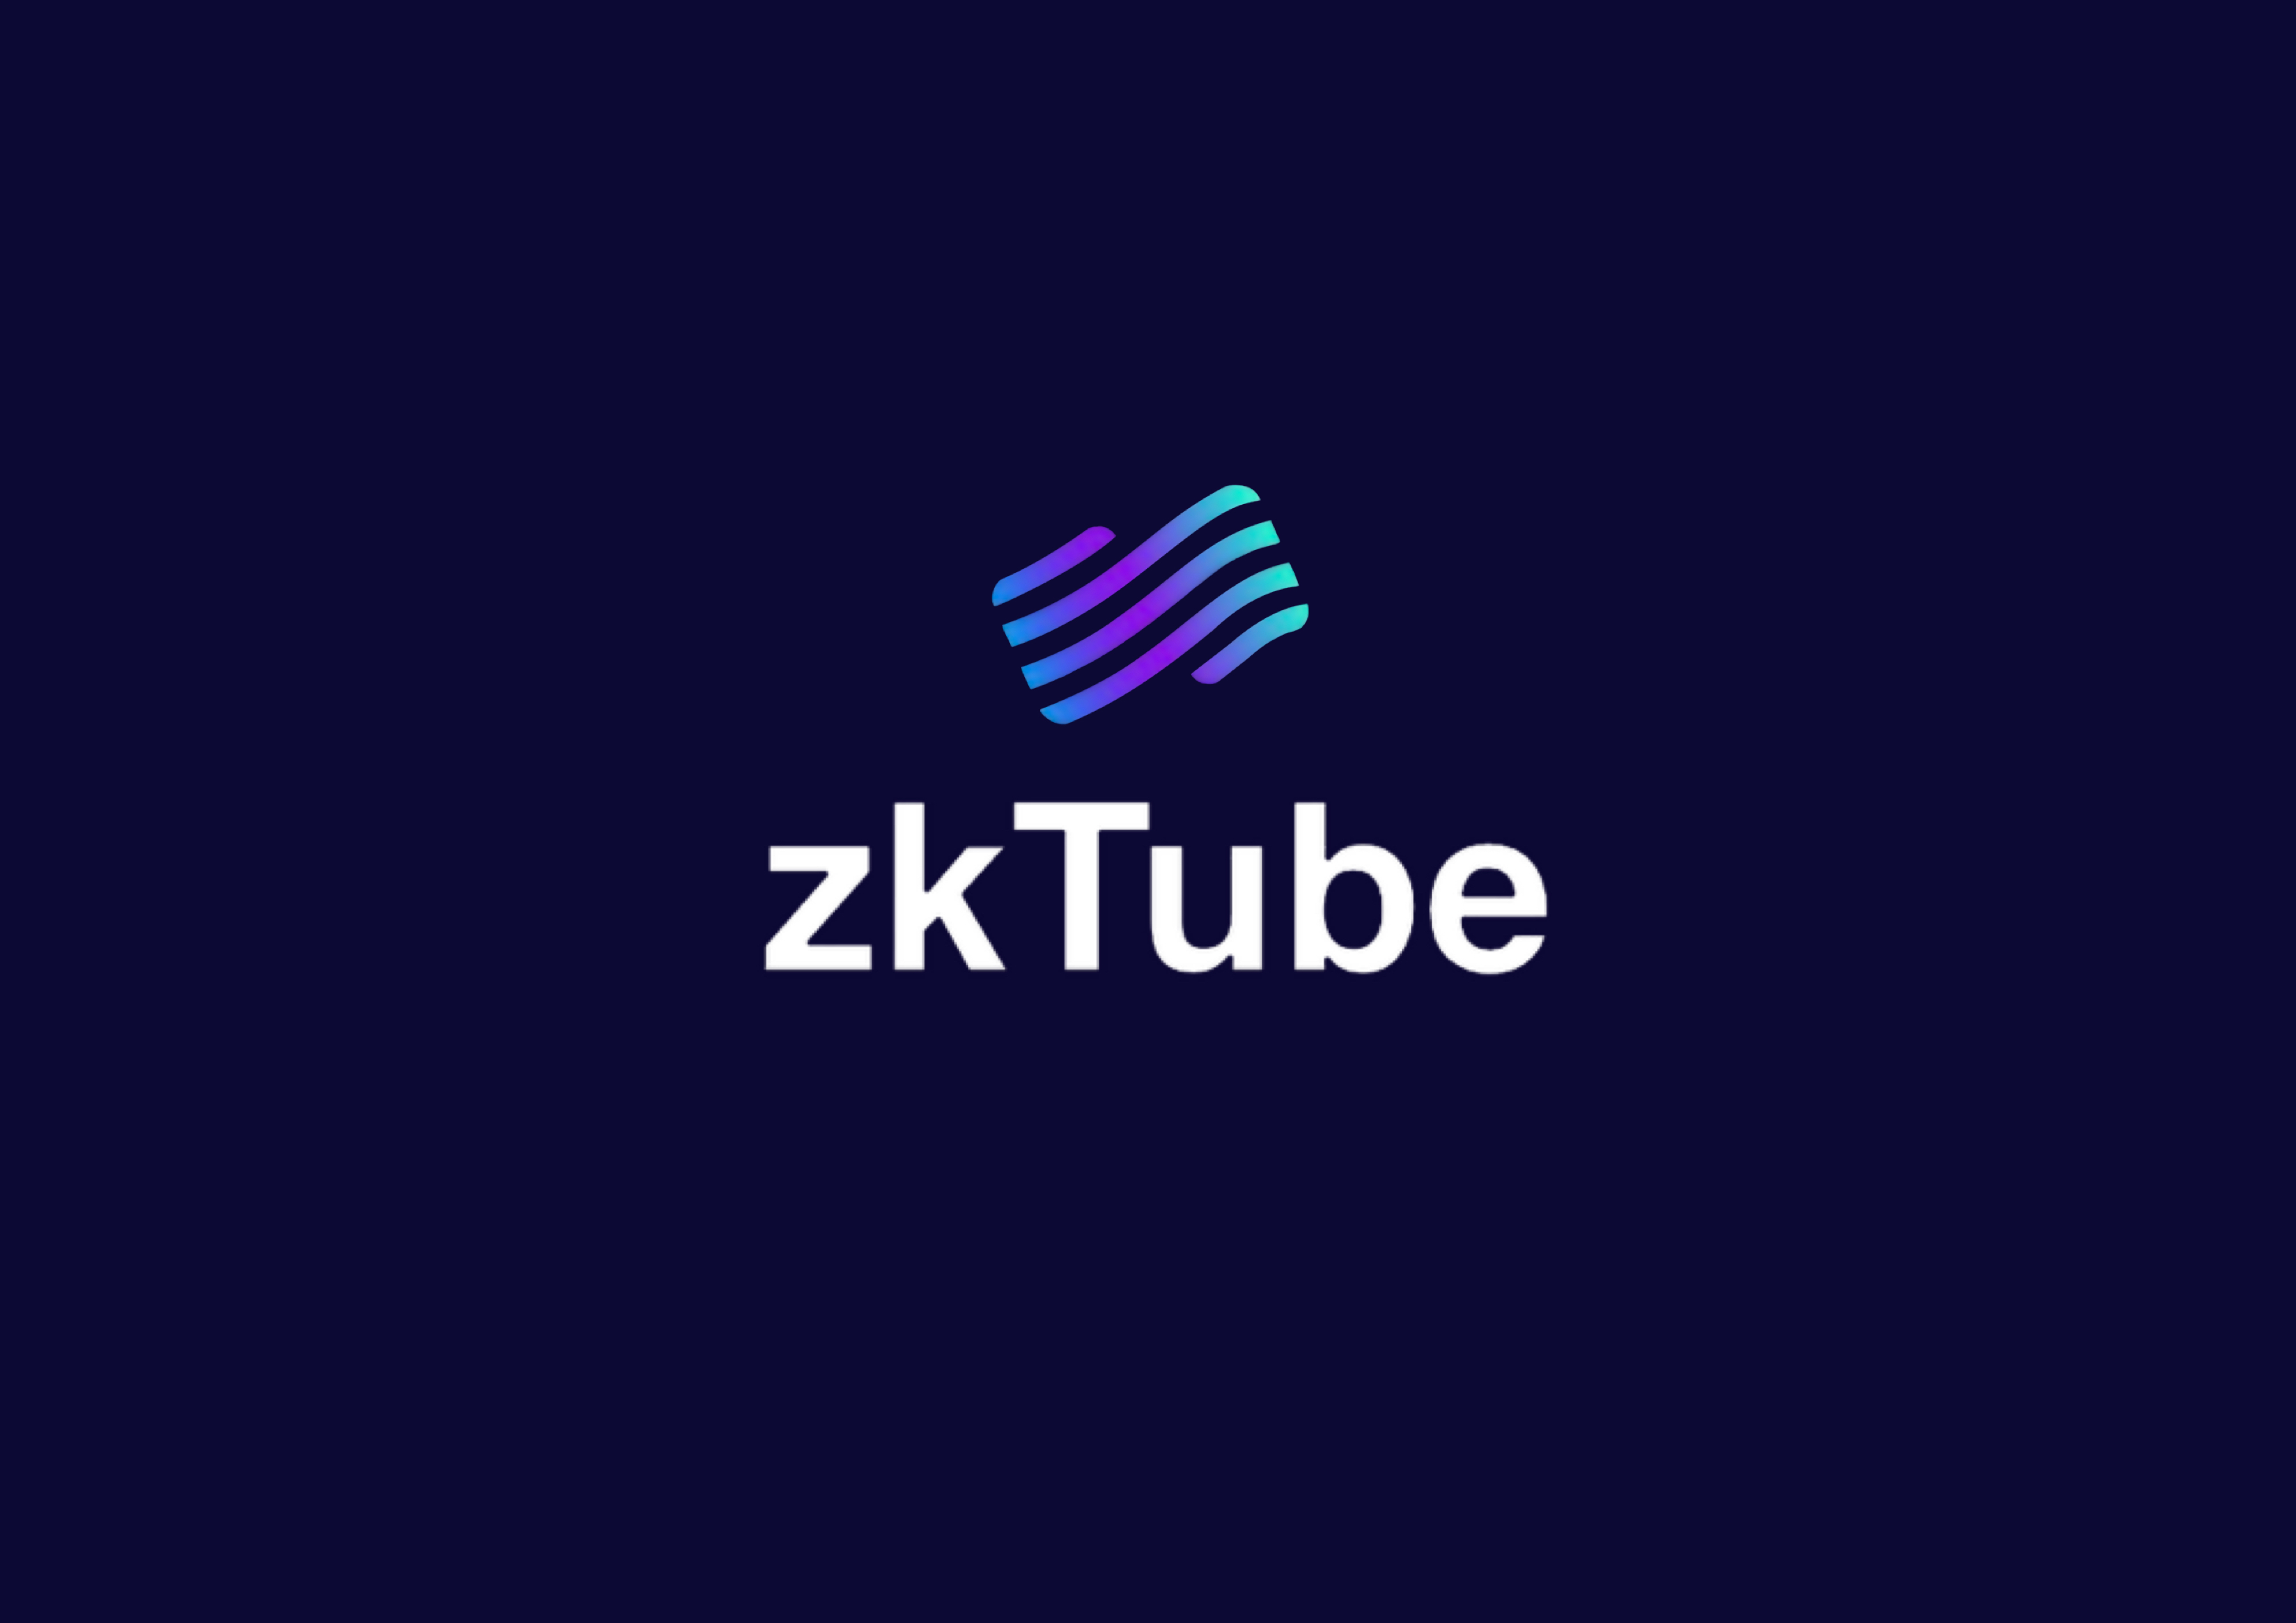 zkTube Logo.jpg